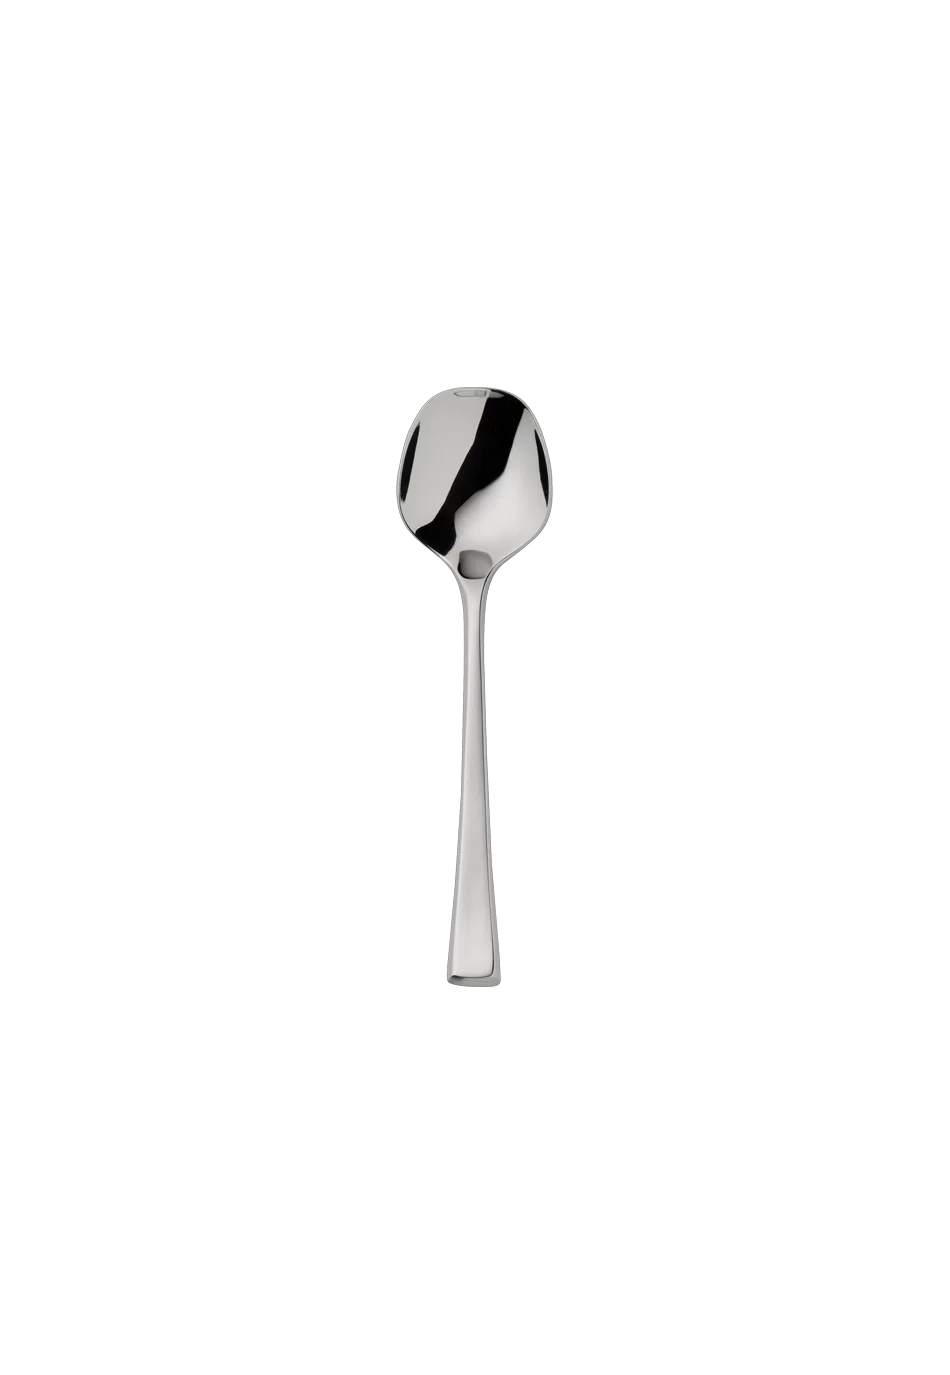 York Sugar Spoon (18/8 stainless steel)